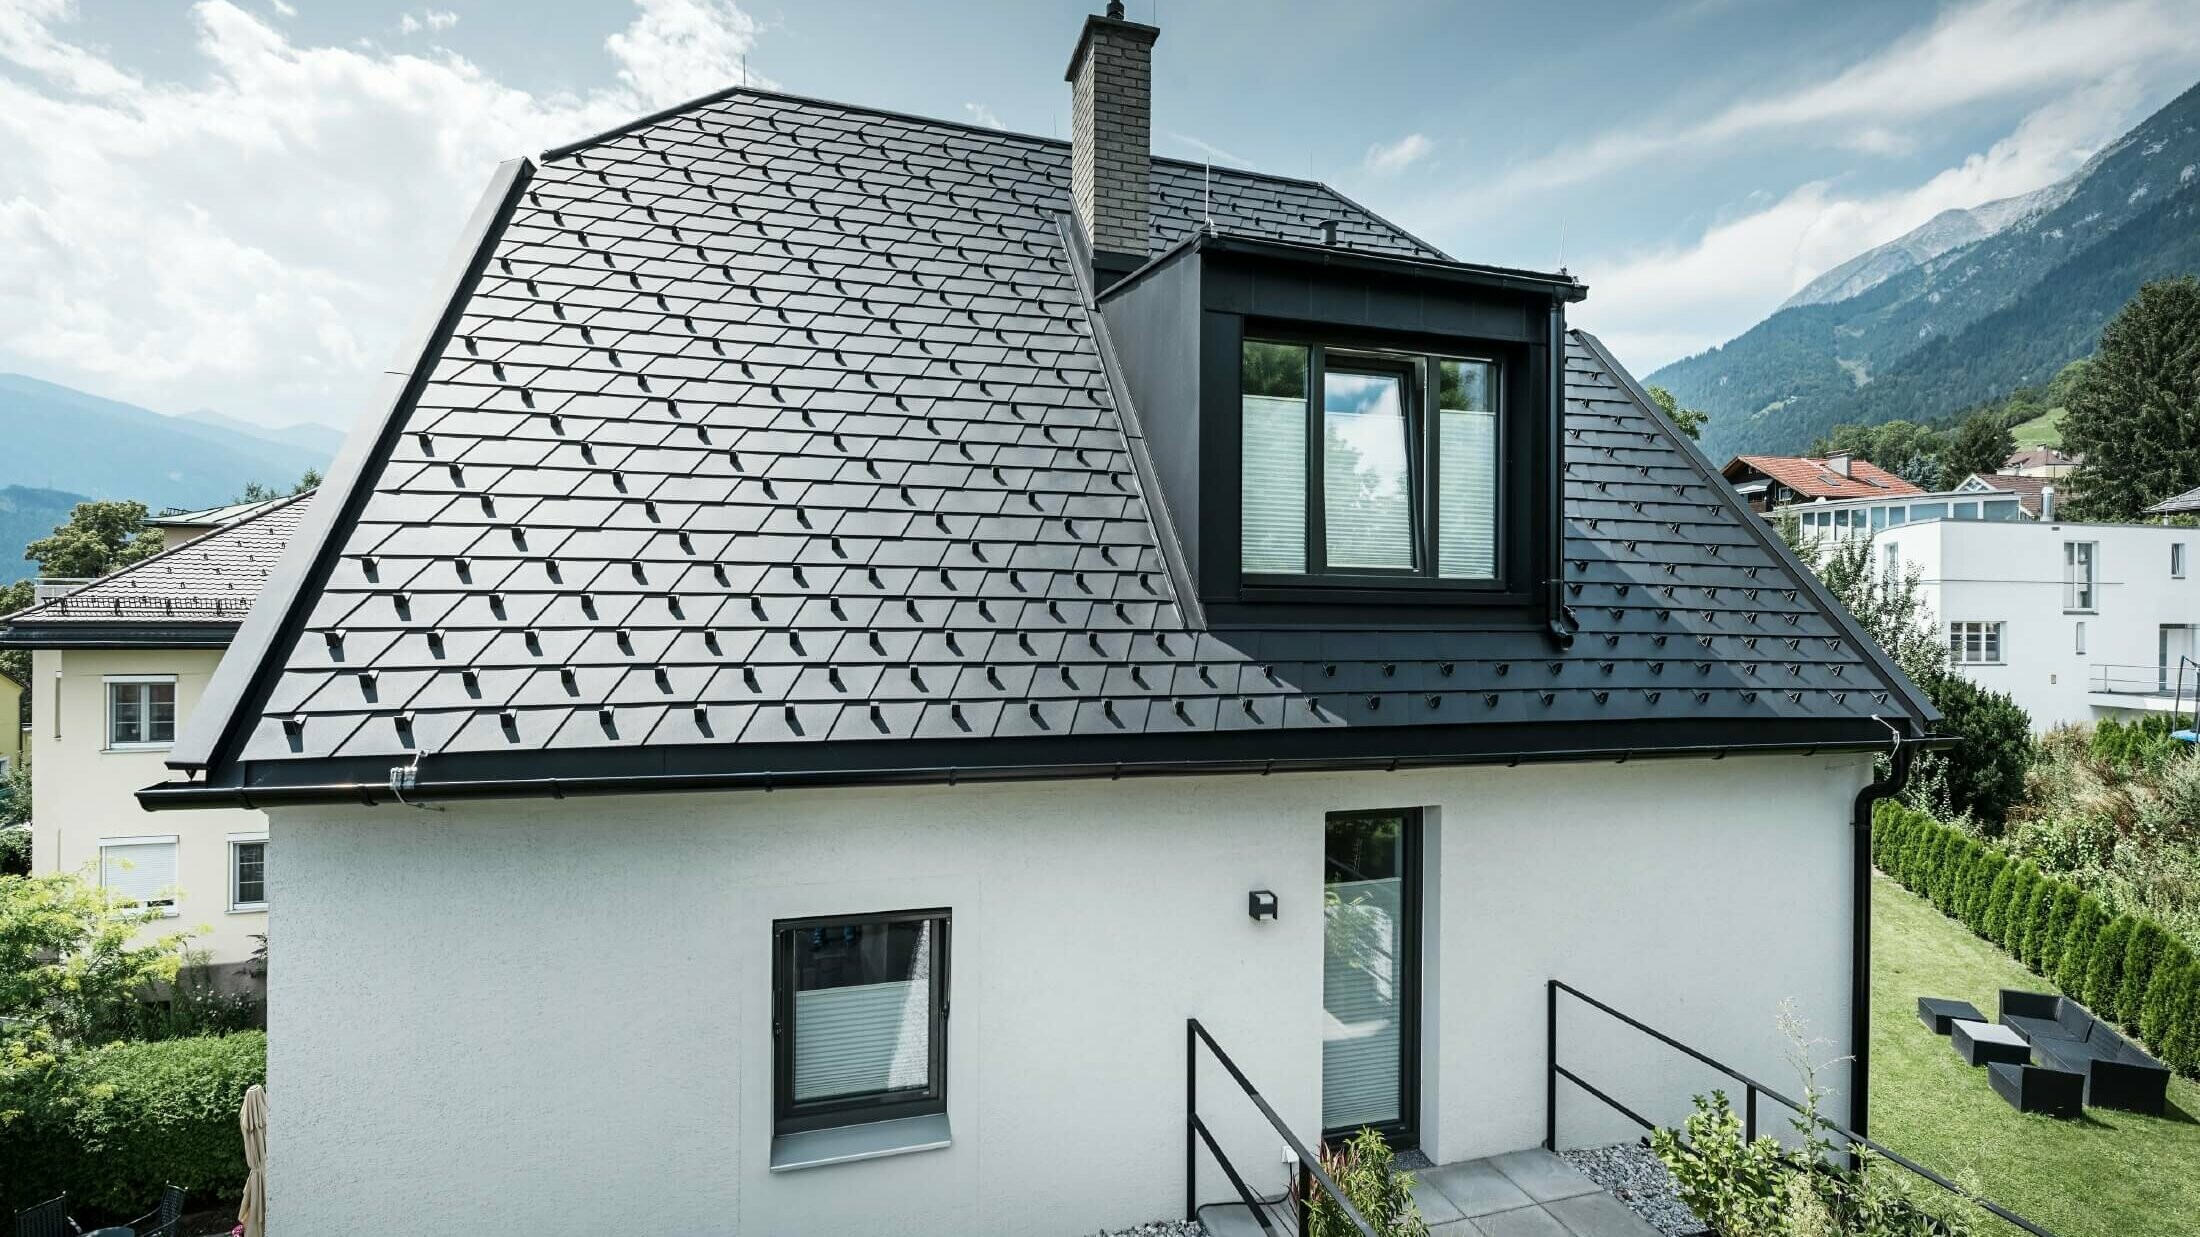 Piccola casa unifamiliare con abbaino. Il tetto è stato ricoperto con scandole PREFA di colore P.10 nero. 